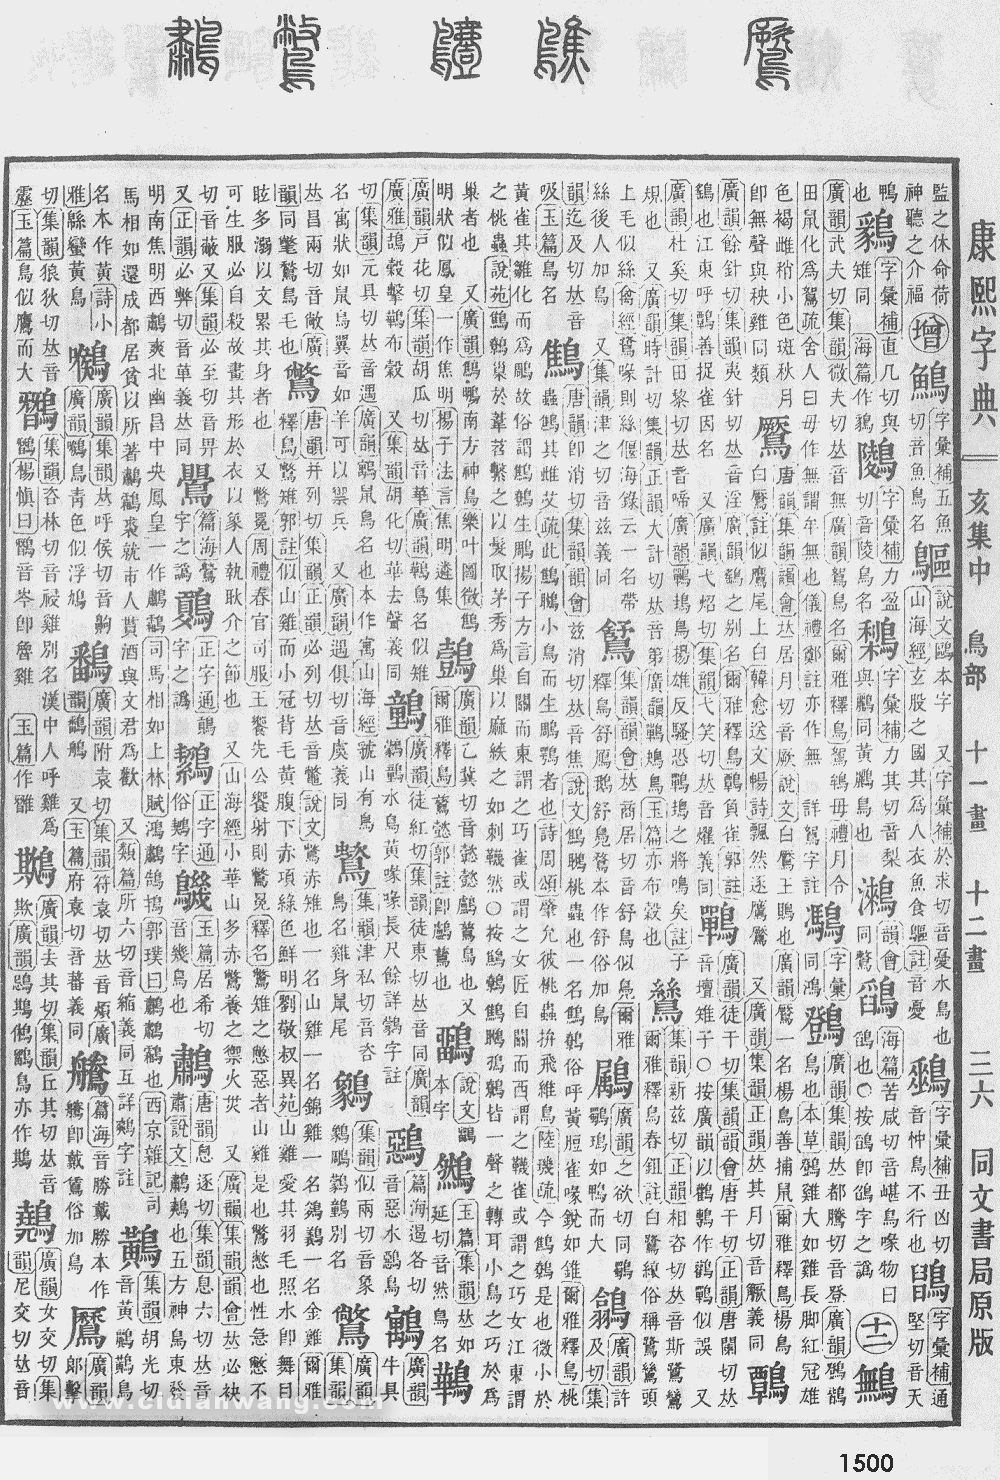 康熙字典掃描版第1500頁